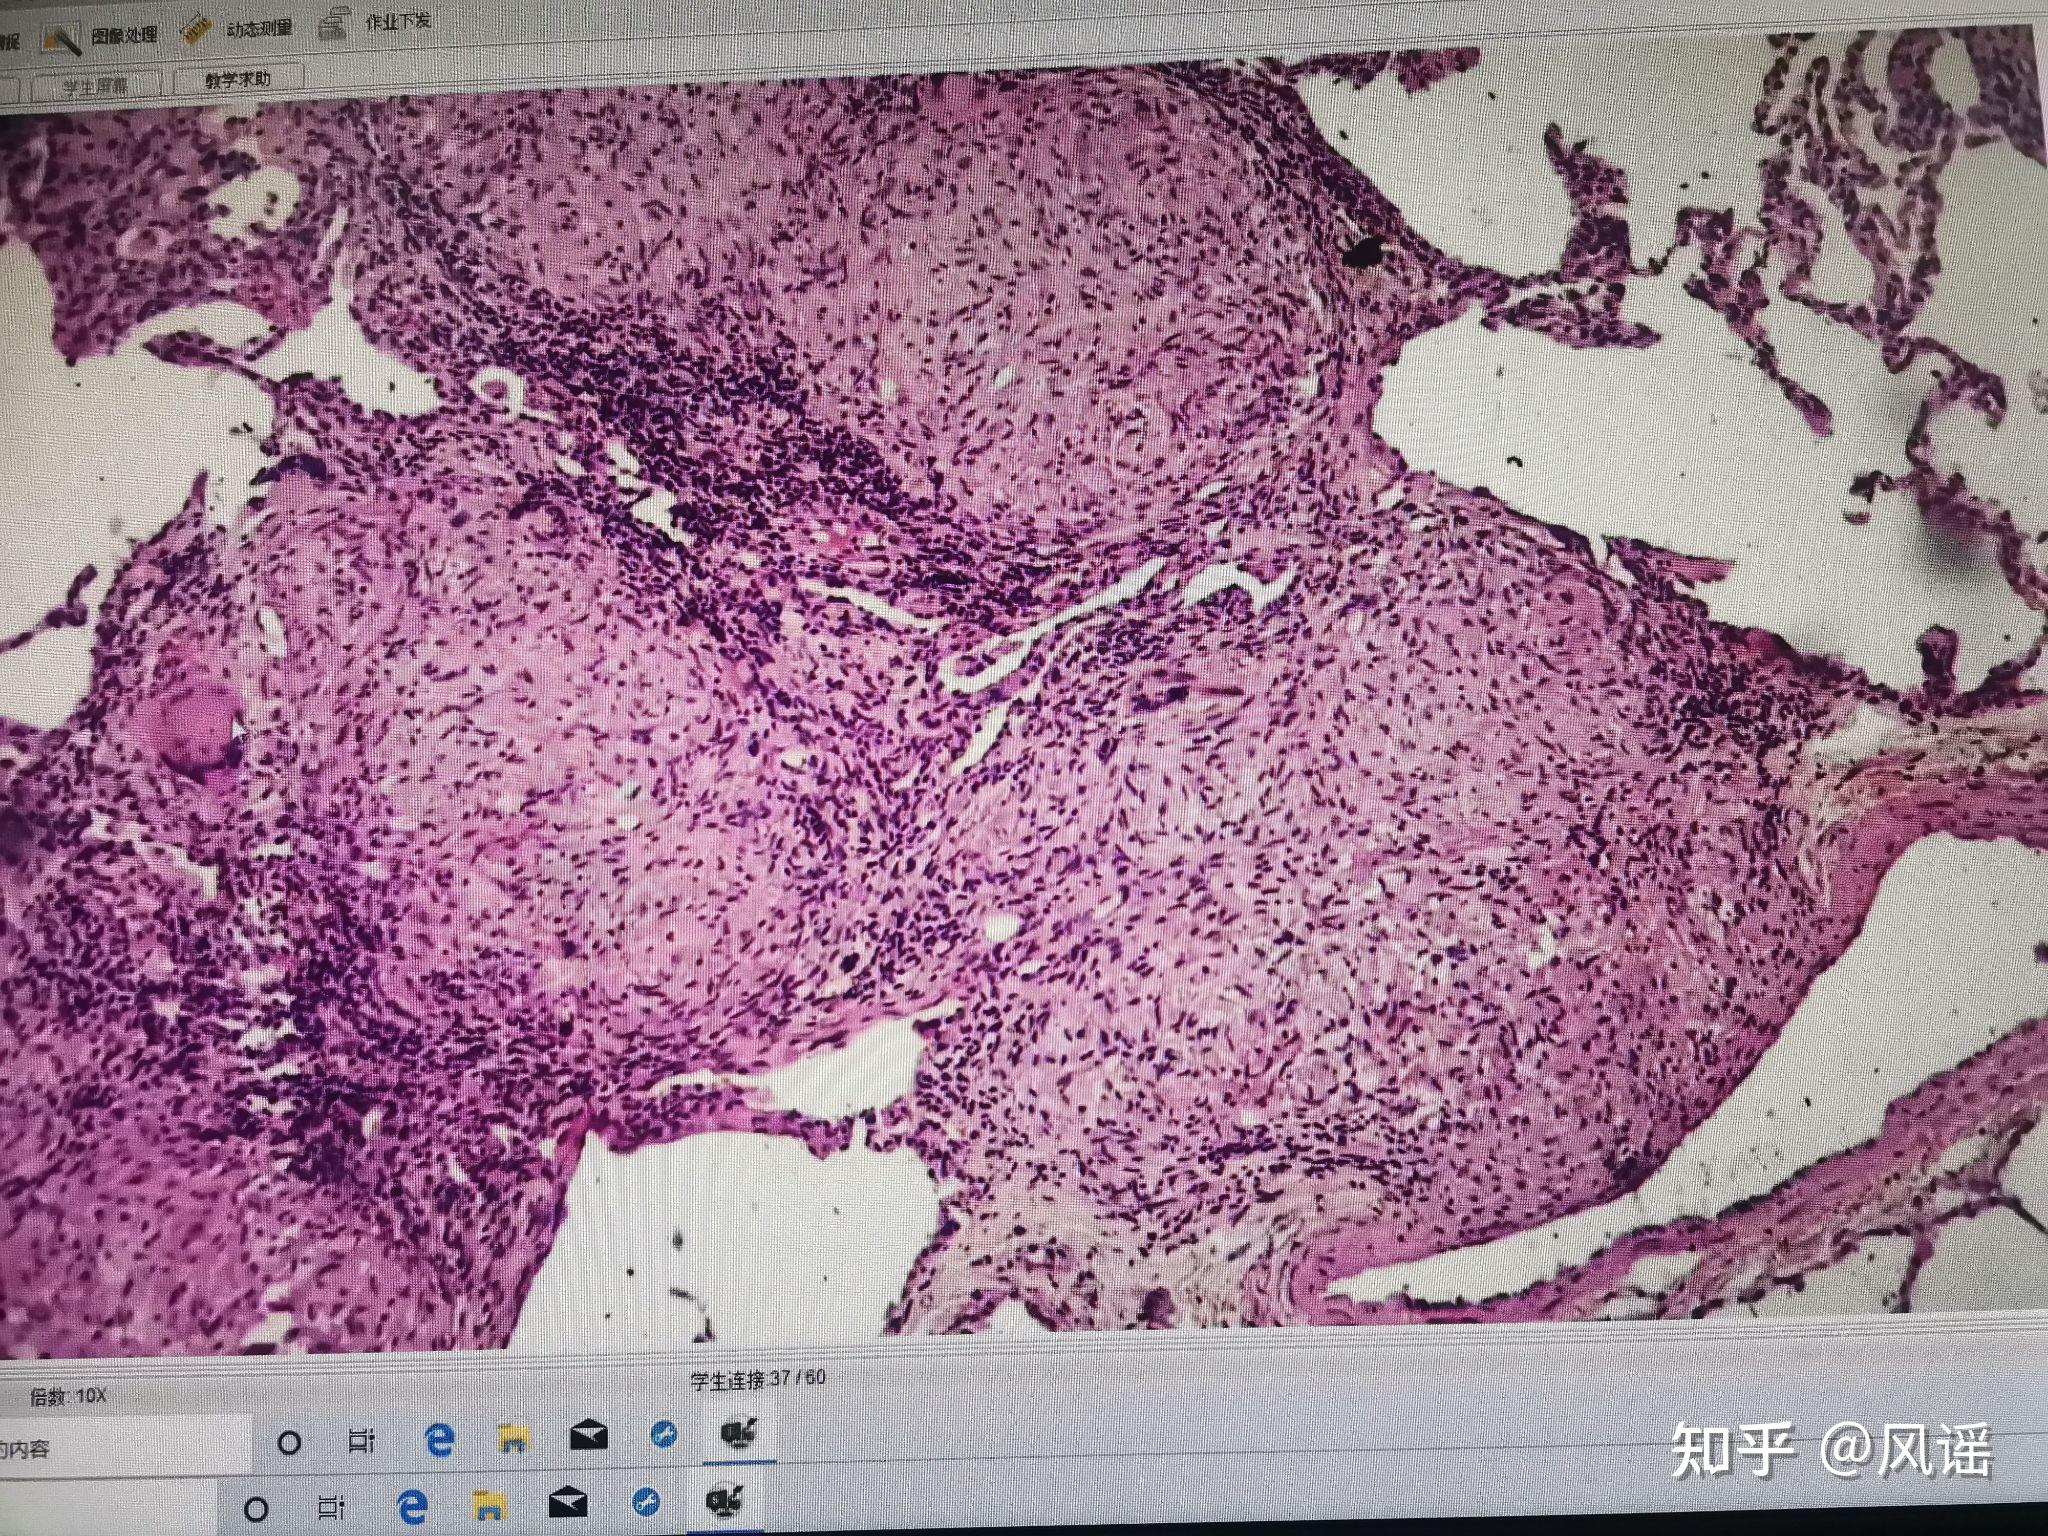 肺结核:中央为干酪样坏死,周围是上皮样细胞,有朗汉斯巨细胞,结核结节